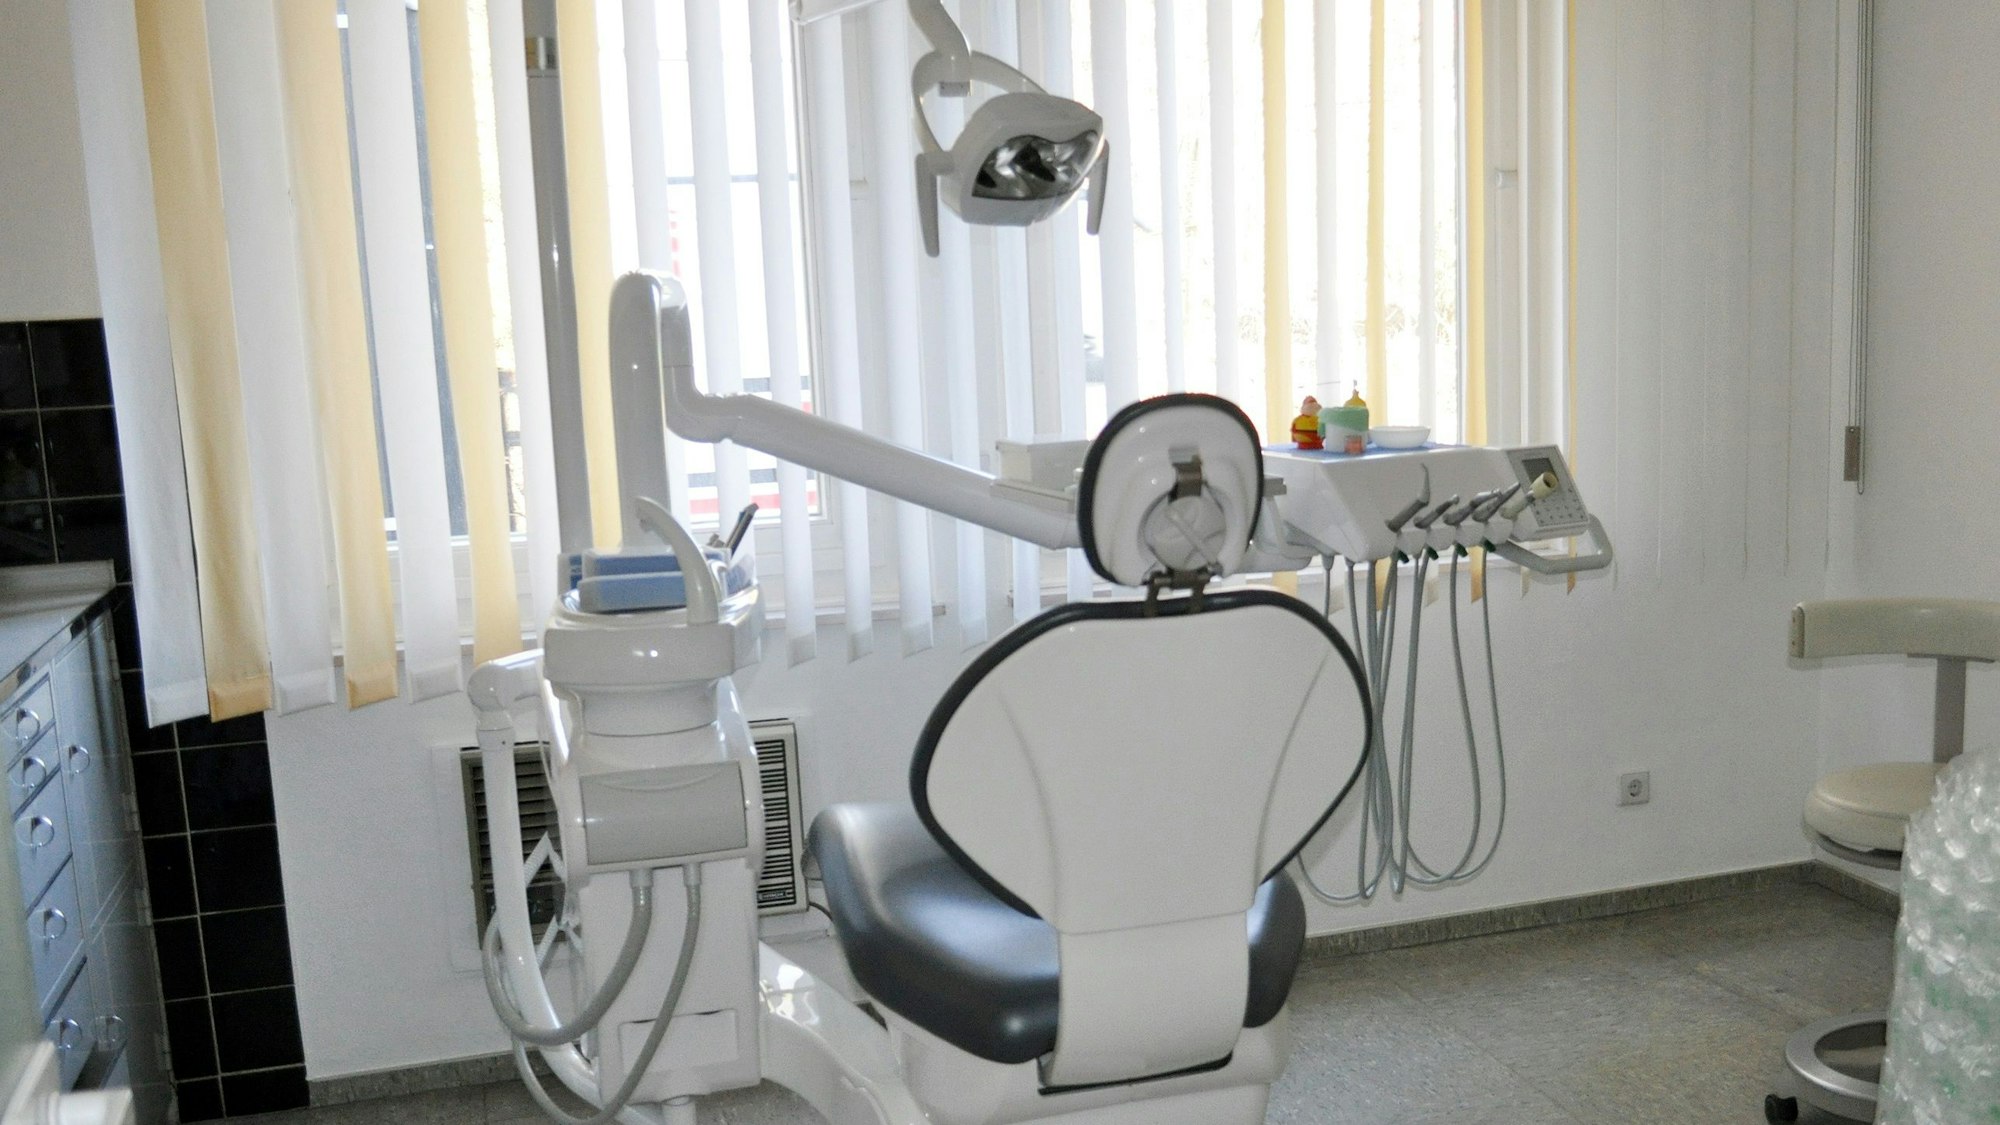 Das Bild zeigt einen Zahnarzt-Stuhl in einer Praxis.